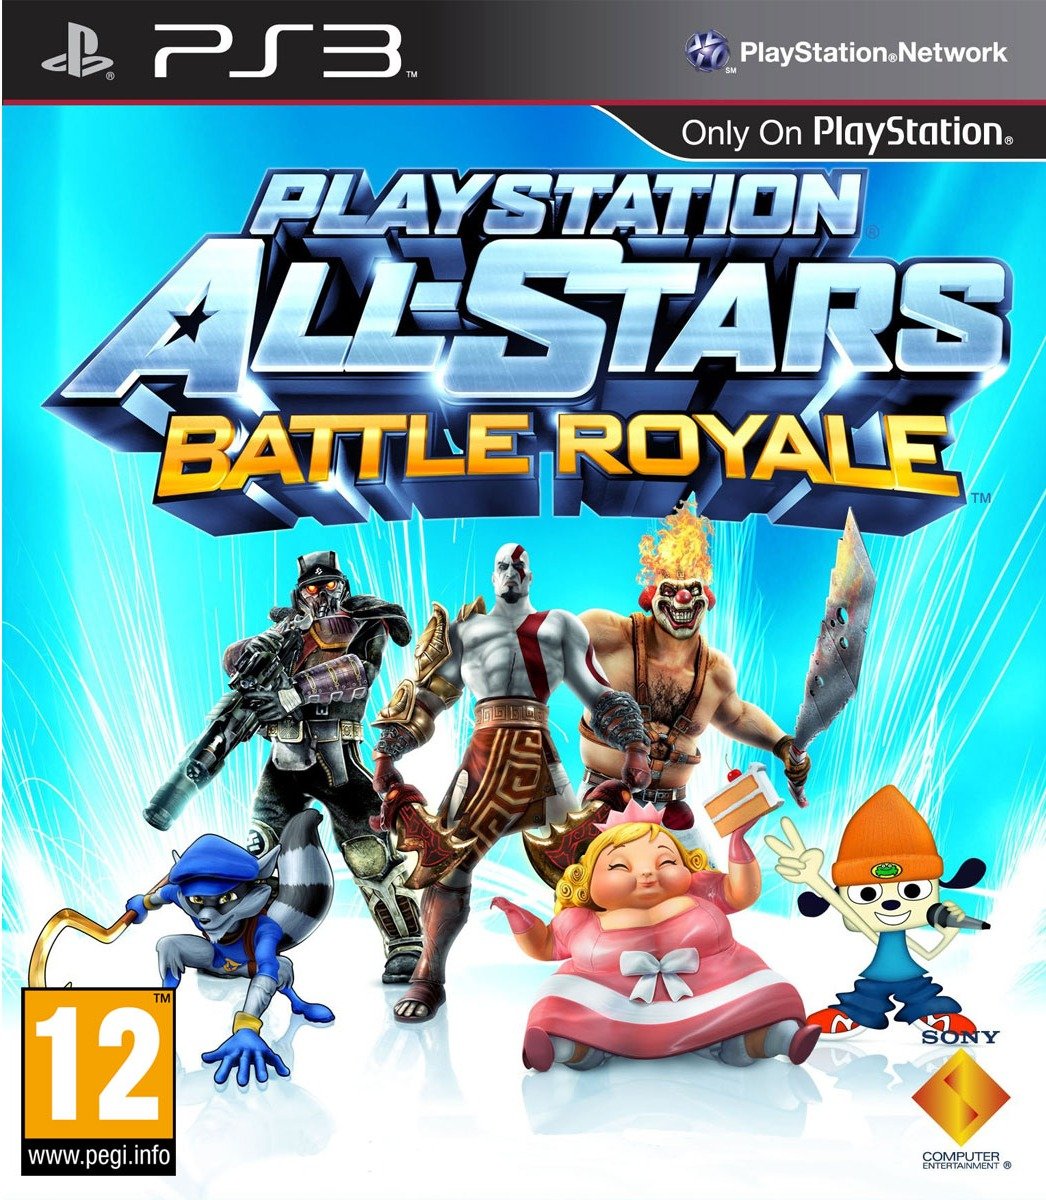 PlayStation All-Stars